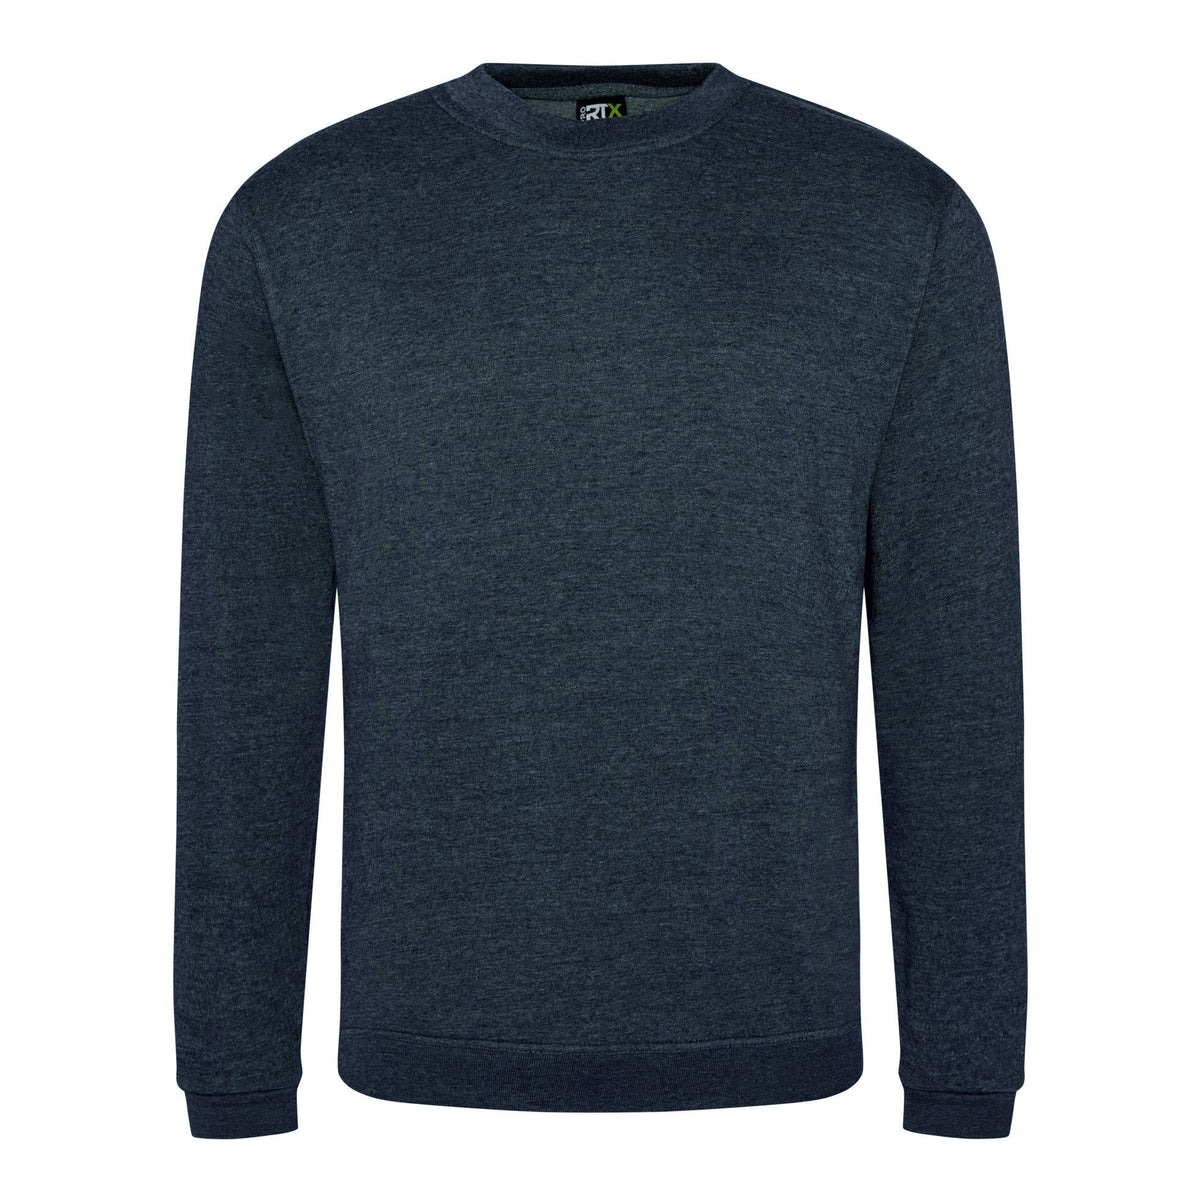 Sweatshirts - Solid Grey